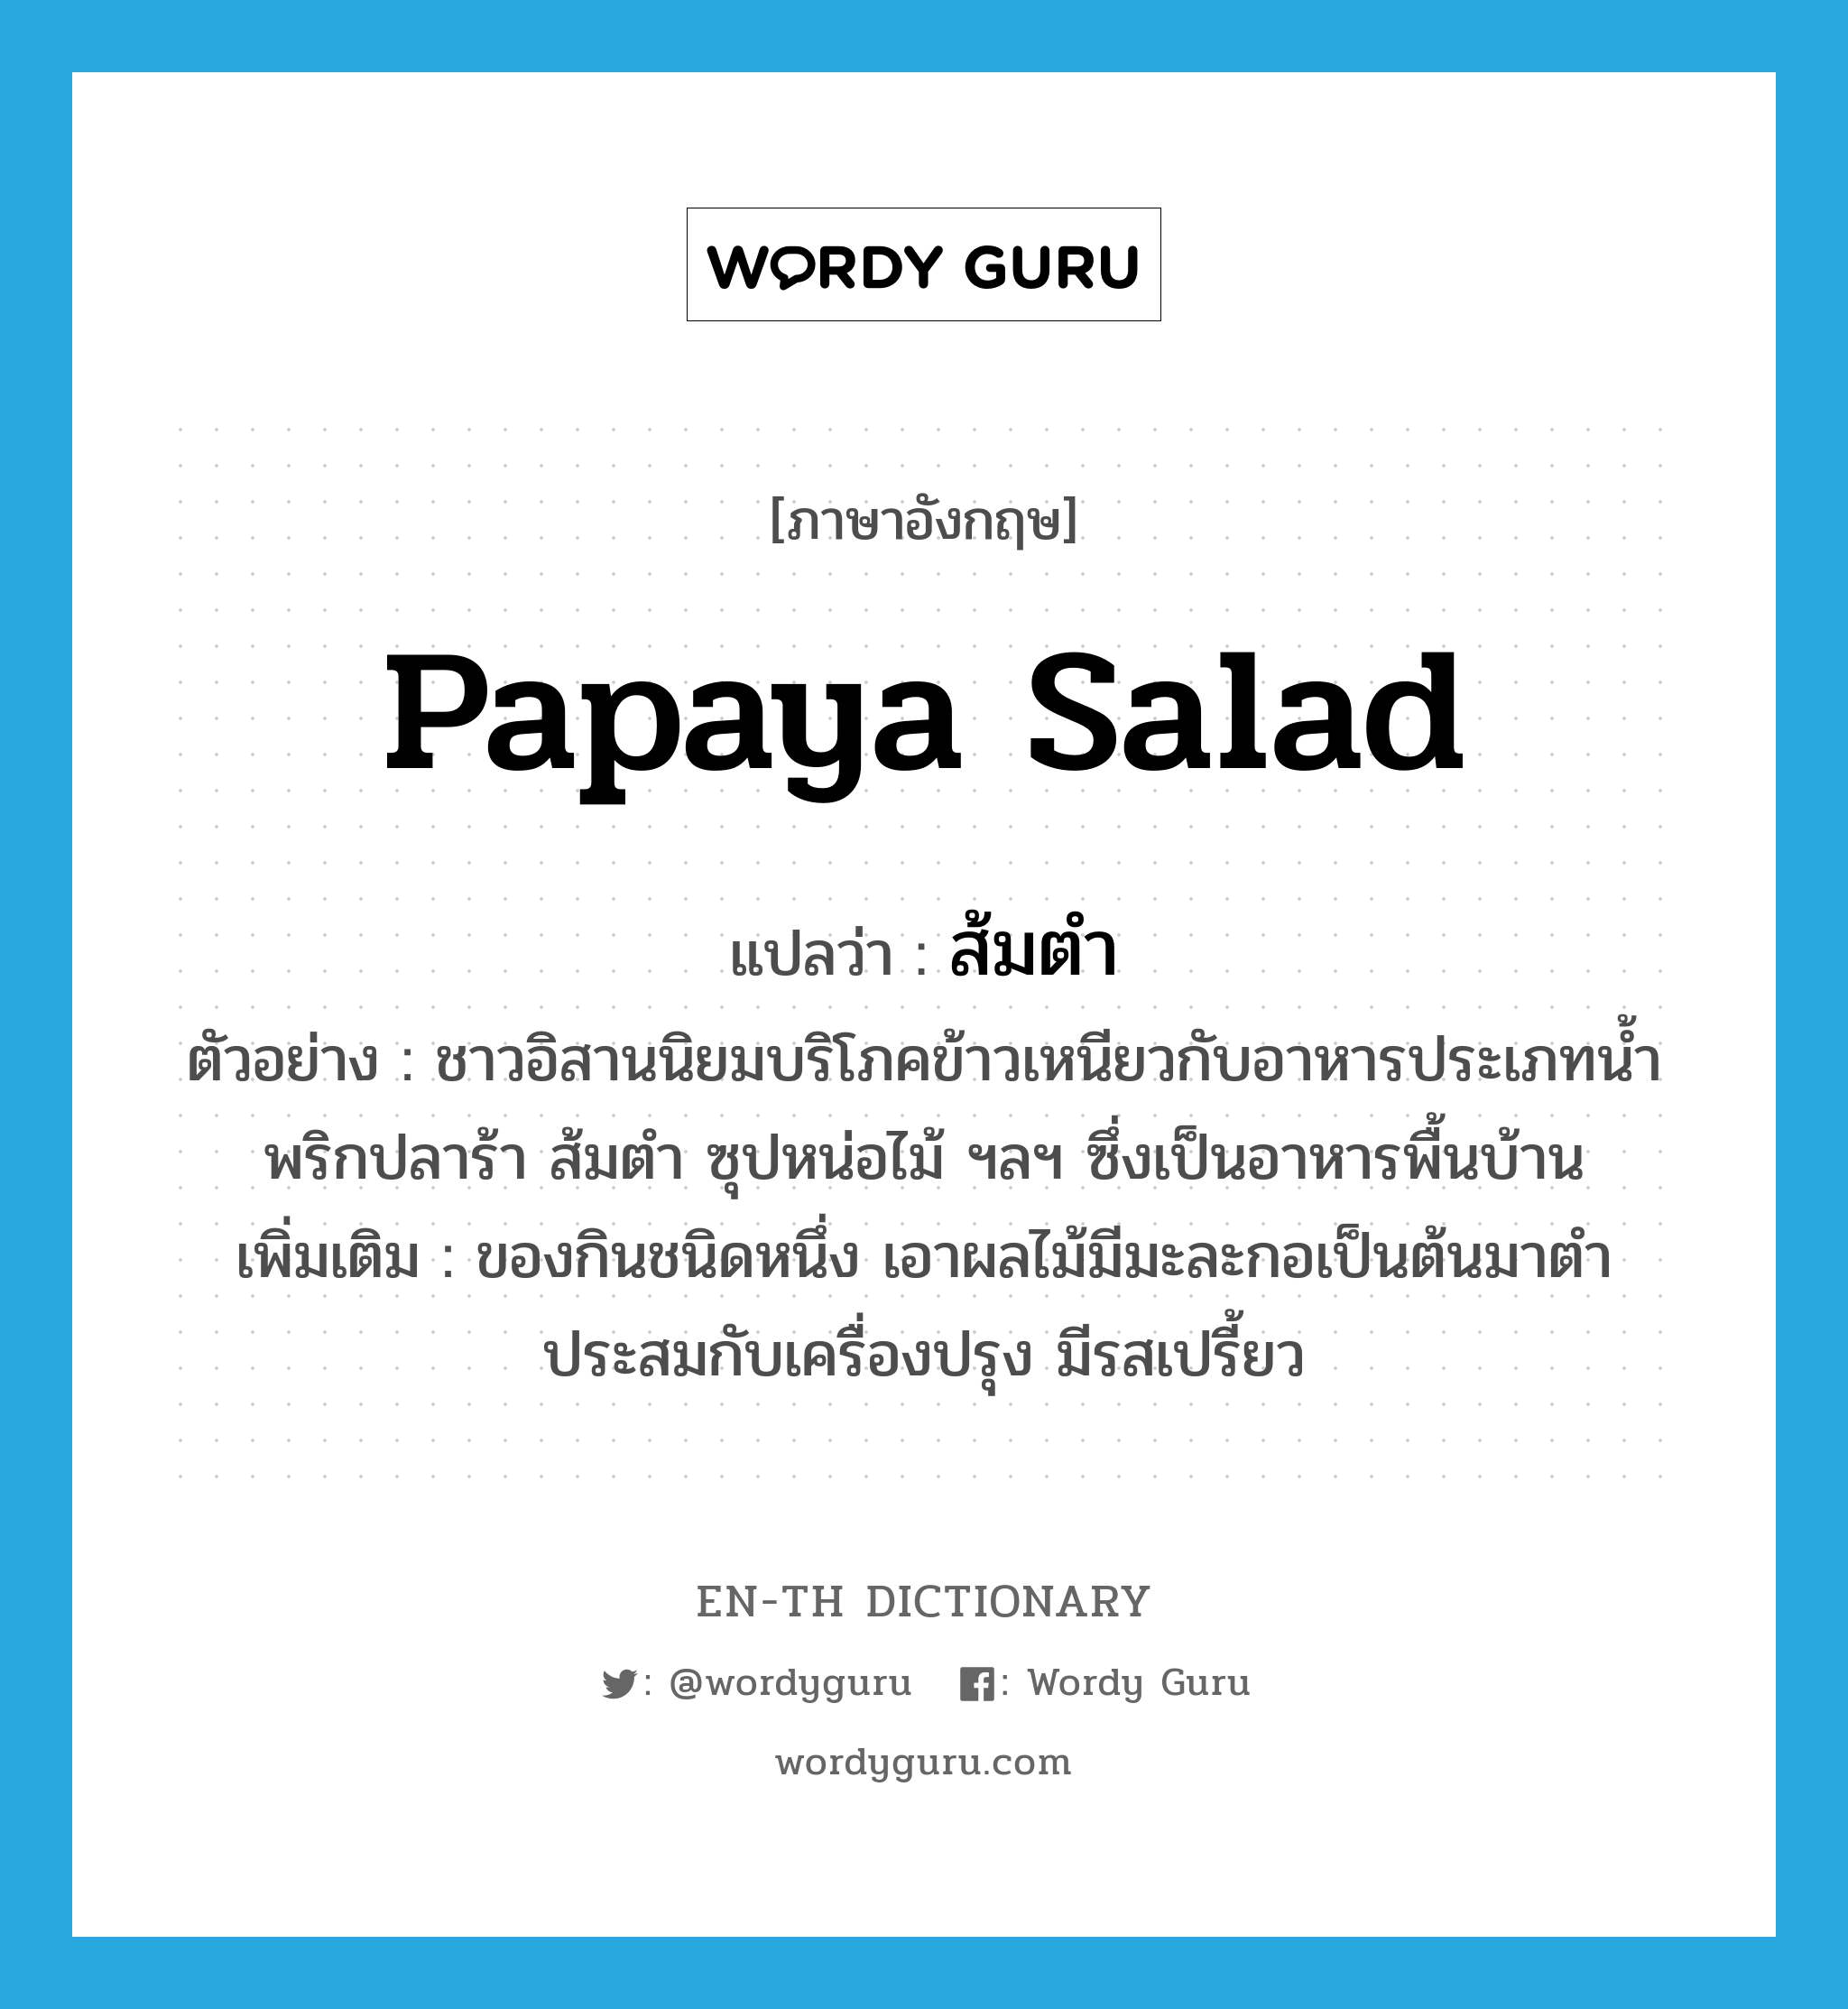 papaya salad แปลว่า?, คำศัพท์ภาษาอังกฤษ papaya salad แปลว่า ส้มตำ ประเภท N ตัวอย่าง ชาวอิสานนิยมบริโภคข้าวเหนียวกับอาหารประเภทน้ำพริกปลาร้า ส้มตำ ซุปหน่อไม้ ฯลฯ ซึ่งเป็นอาหารพื้นบ้าน เพิ่มเติม ของกินชนิดหนึ่ง เอาผลไม้มีมะละกอเป็นต้นมาตำประสมกับเครื่องปรุง มีรสเปรี้ยว หมวด N